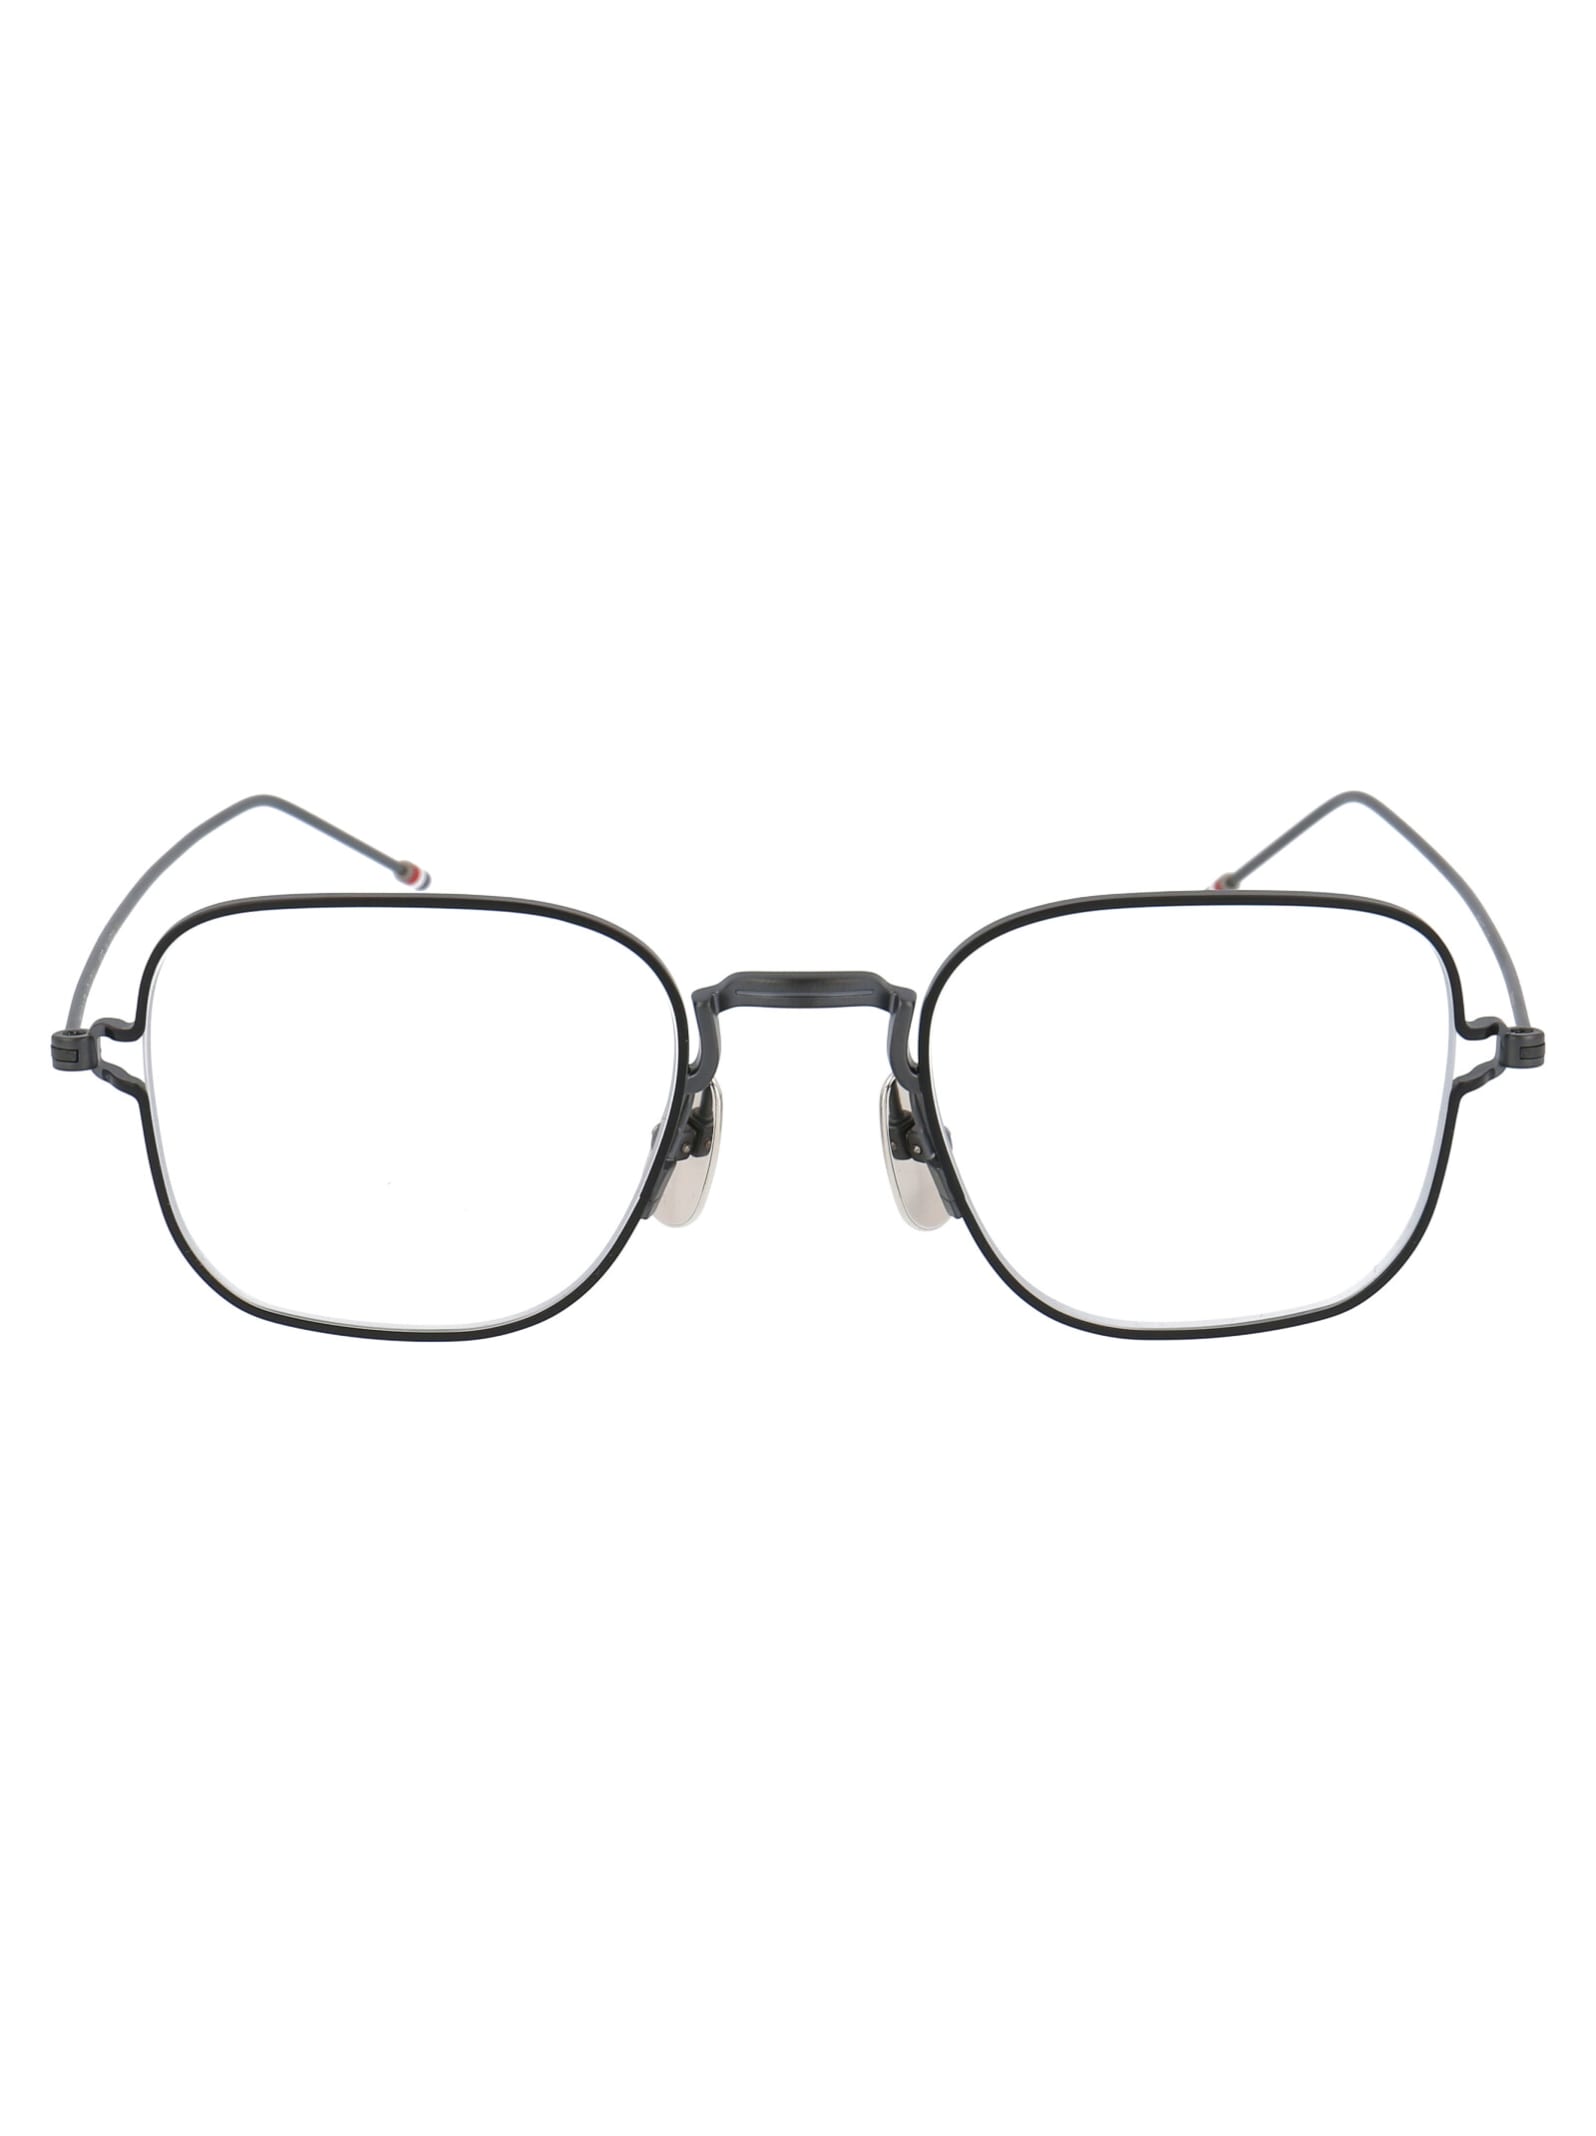 Thom Browne Tb-116 Glasses In Black Iron - Black W/ Clear